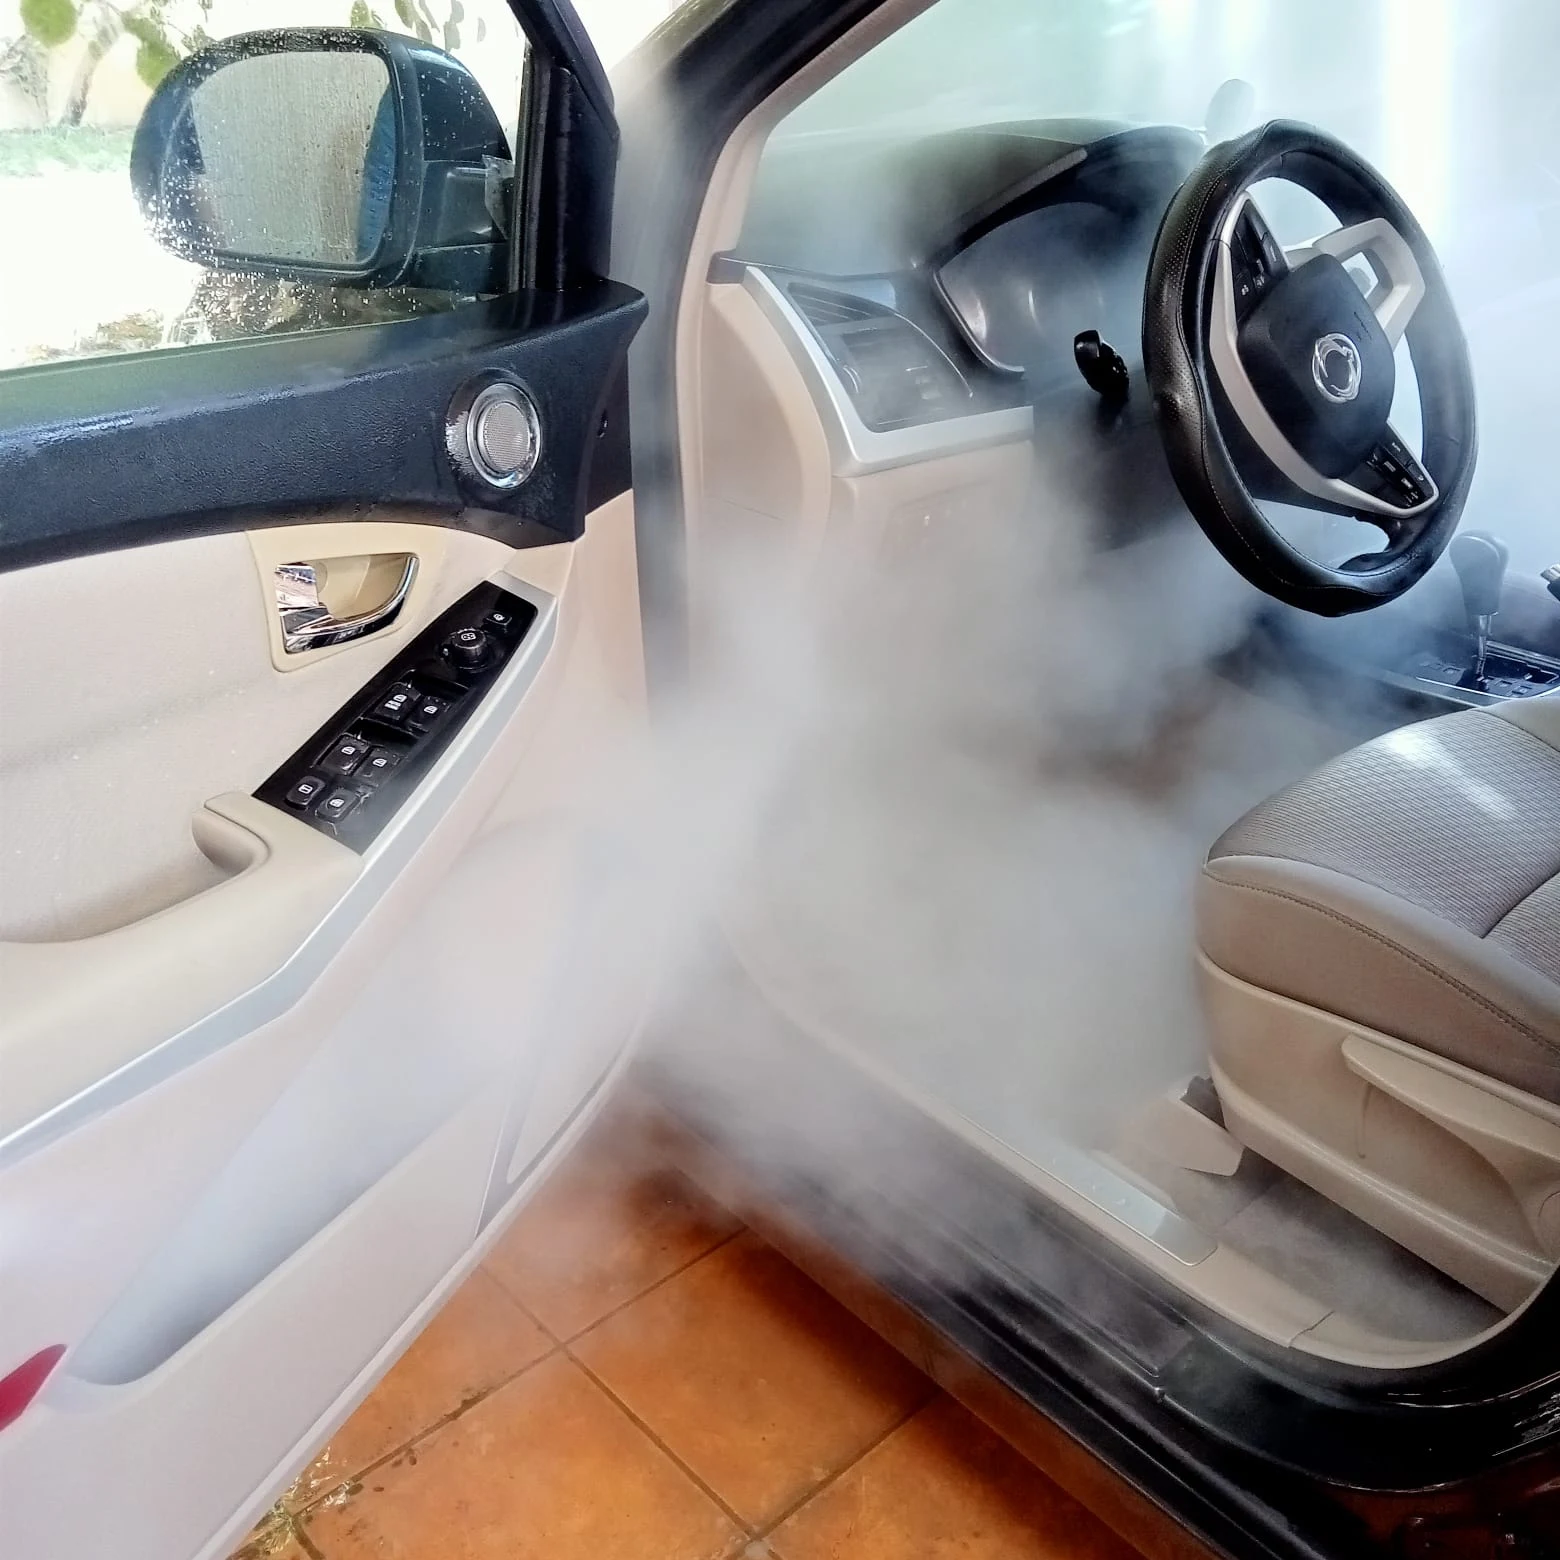 هل يؤثر غسيل السيارة من الداخل بالبخار؟ - إزالة البقع الصعبة والروائح الكريهة